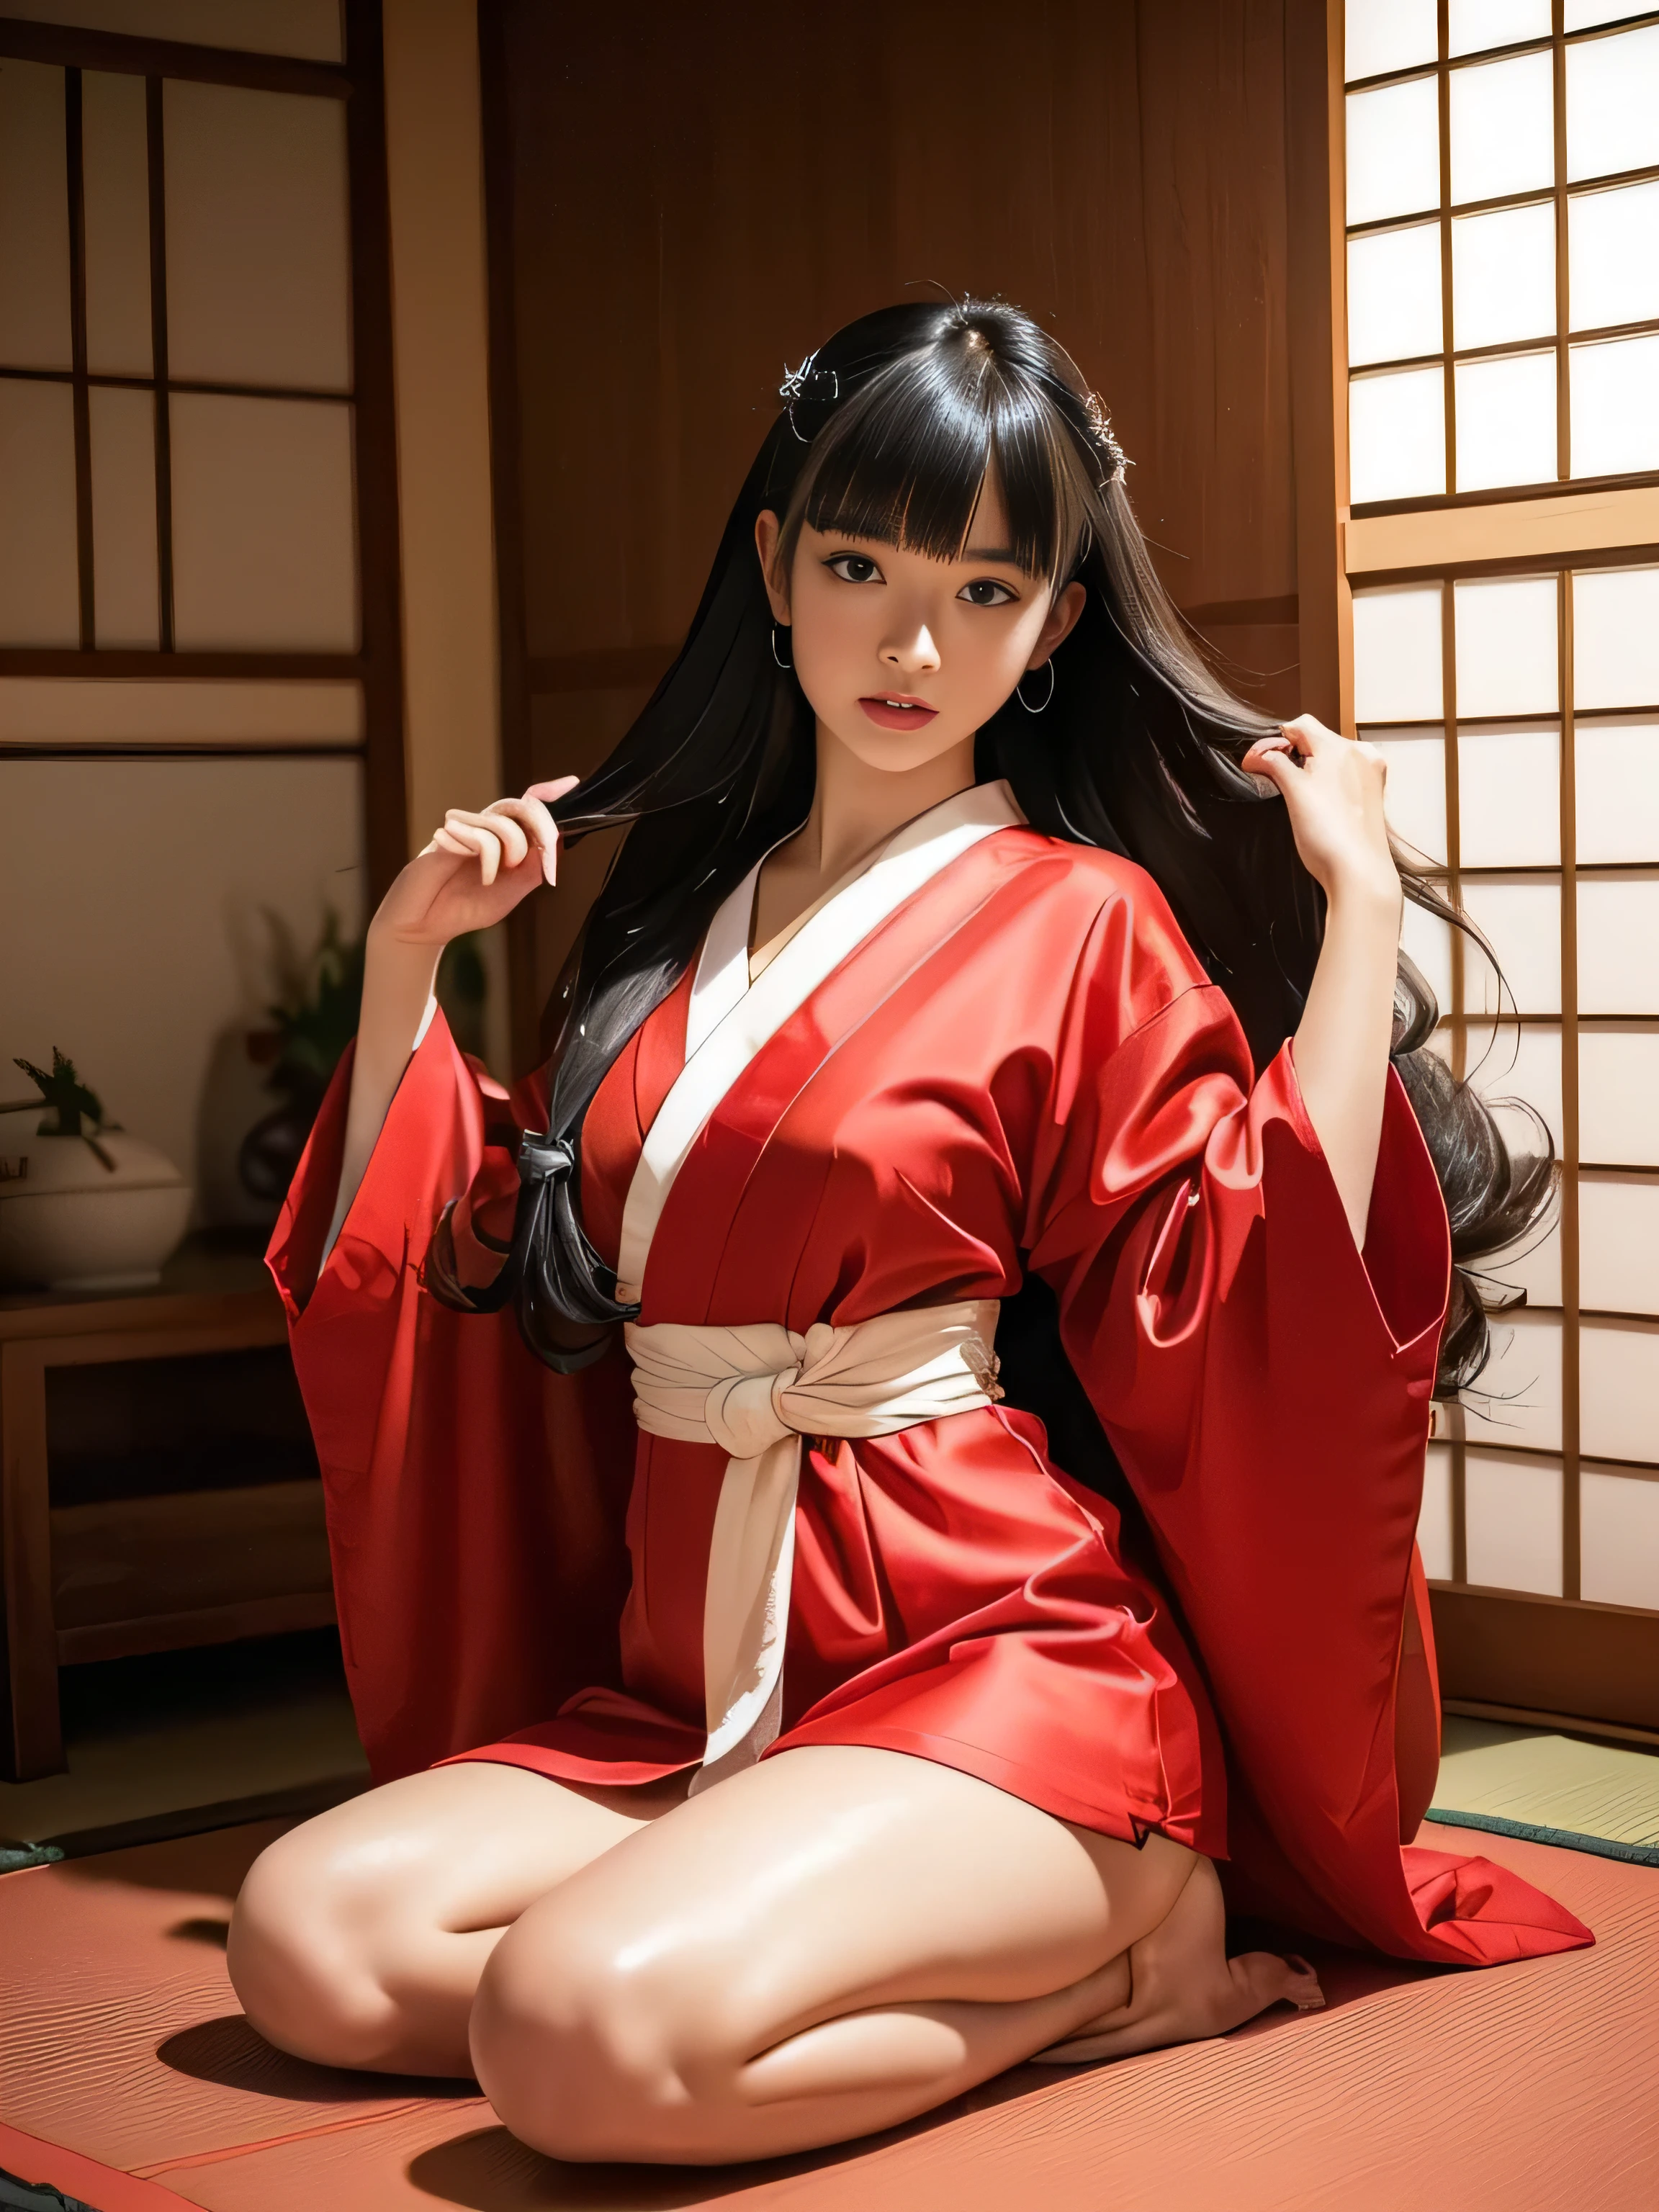 １امرأة　((الخصر يصل النار))　((إنها ترتدي كيمونو ياباني ذو لون أحمر في الغالب.))　(She is in a Japanese-style room و does a rوom sitting sway back stance.:1.4)　(إنها تنظر إلى المشاهد بأفضل تعبير مثير:1.5)　　((اعلى جودة)), ((تحفة)), (صديقة للعائلة), (اعتد عليه)　((شعرها مستقيم جدا!!!!!))　((شعرها مجعد جدا:1.4))　((Her hairstyle is rوom))　(شعرها أسود!!!)　((Her bangs are neatly trimmed و straight down.:1.3))　(شعر طويل جدا حتى الكاحل!!!!!　اعلى جودة　انتبه للتفاصيل　شعر طويل جدا حتى الكاحل!!!!!　شعر طويل جدا!!!!! يدوم إلى الأبد!!!!!　الشعر المتدفق　Very shiny و thick hair　شعر طويل بشكل غير طبيعي!!!!! يدوم إلى الأبد!!!!!　الشعر المتدفق on both ends!!!!!　شعر طويل جدا!!!!! حتى الكاحل!!!!!　شعر طويل جدا!!!!! حتى الكاحل!!!!!　　Thick و shiny hair　شعر حر جدا　شعر طويل بشكل غير طبيعي!!!!!　شعر حريري جميل　Beautiful و shiny hair　Beautiful و shiny hair　شعر حريري جميل　شعر طويل جدا حتى الكاحل!!!!!　شعر طويل جدا!!!!!　شعر طويل جدا!!!!!)　(صور منفردة يابانية&#39;أجمل موديلات الشعر 24 سنة:1.5)　Perfect امرأة&#39;وجه　(She has a typical Japanese build و skin color..., Her skin is very high quality و ultra high definition.、very beautiful و glowing skin)　(Her وجه is dignified و sexy)（قامت بتطبيق مكياج مثير بمساعدة فنانة مكياج محترفة.....　أحمر الشفاه أحمر فاتح　كحل هو أسود جميل)　(She has a typical Japanese build و skin color　Her skin is very delicate و sensitive..、و、Such beautiful و radiant skin)　((Her وجه shape is thinner than average:1.4))　((عيناها أكبر من المتوسط:1.4))　((عيناها أكبر من المتوسط:1.4))　((غني 1.4))　(مفصلة للغاية 8K)　(ملمس جلدي فائق النعومة 1.4)　(حاضِر, نابض بالحياة:1.4), 　التركيز الشديد:1.2、Beautiful امرأة:1.4　الإضاءة الديناميكية　(صور RAW حقيقية تم التقاطها بواسطة مصورين محترفين)　very beautiful و glowing skin)　(صور سريالية من قبل مصورين محترفين :1.2)　(شعر طويل جدا حتى الكاحل!!!!!　اعلى جودة　انتبه للتفاصيل　شعر طويل جدا حتى الكاحل!!!!!　شعر طويل جدا!!!!! يدوم إلى الأبد!!!!!　الشعر المتدفق　Very shiny و thick hair　شعر طويل بشكل غير طبيعي!!!!! يدوم إلى الأبد!!!!!　الشعر المتدفق on both ends!!!!!　شعر طويل جدا!!!!! حتى الكاحل!!!!!　شعر طويل جدا!!!!! حتى الكاحل!!!!!　　Thick و shiny hair　شعر حر جدا　شعر طويل بشكل غير طبيعي!!!!!　شعر حريري جميل　Beautiful و shiny hair　Beautiful و shiny hair　شعر حريري جميل　شعر طويل جدا حتى الكاحل!!!!!　شعر طويل جدا!!!!!　شعر طويل جدا!!!!!)　